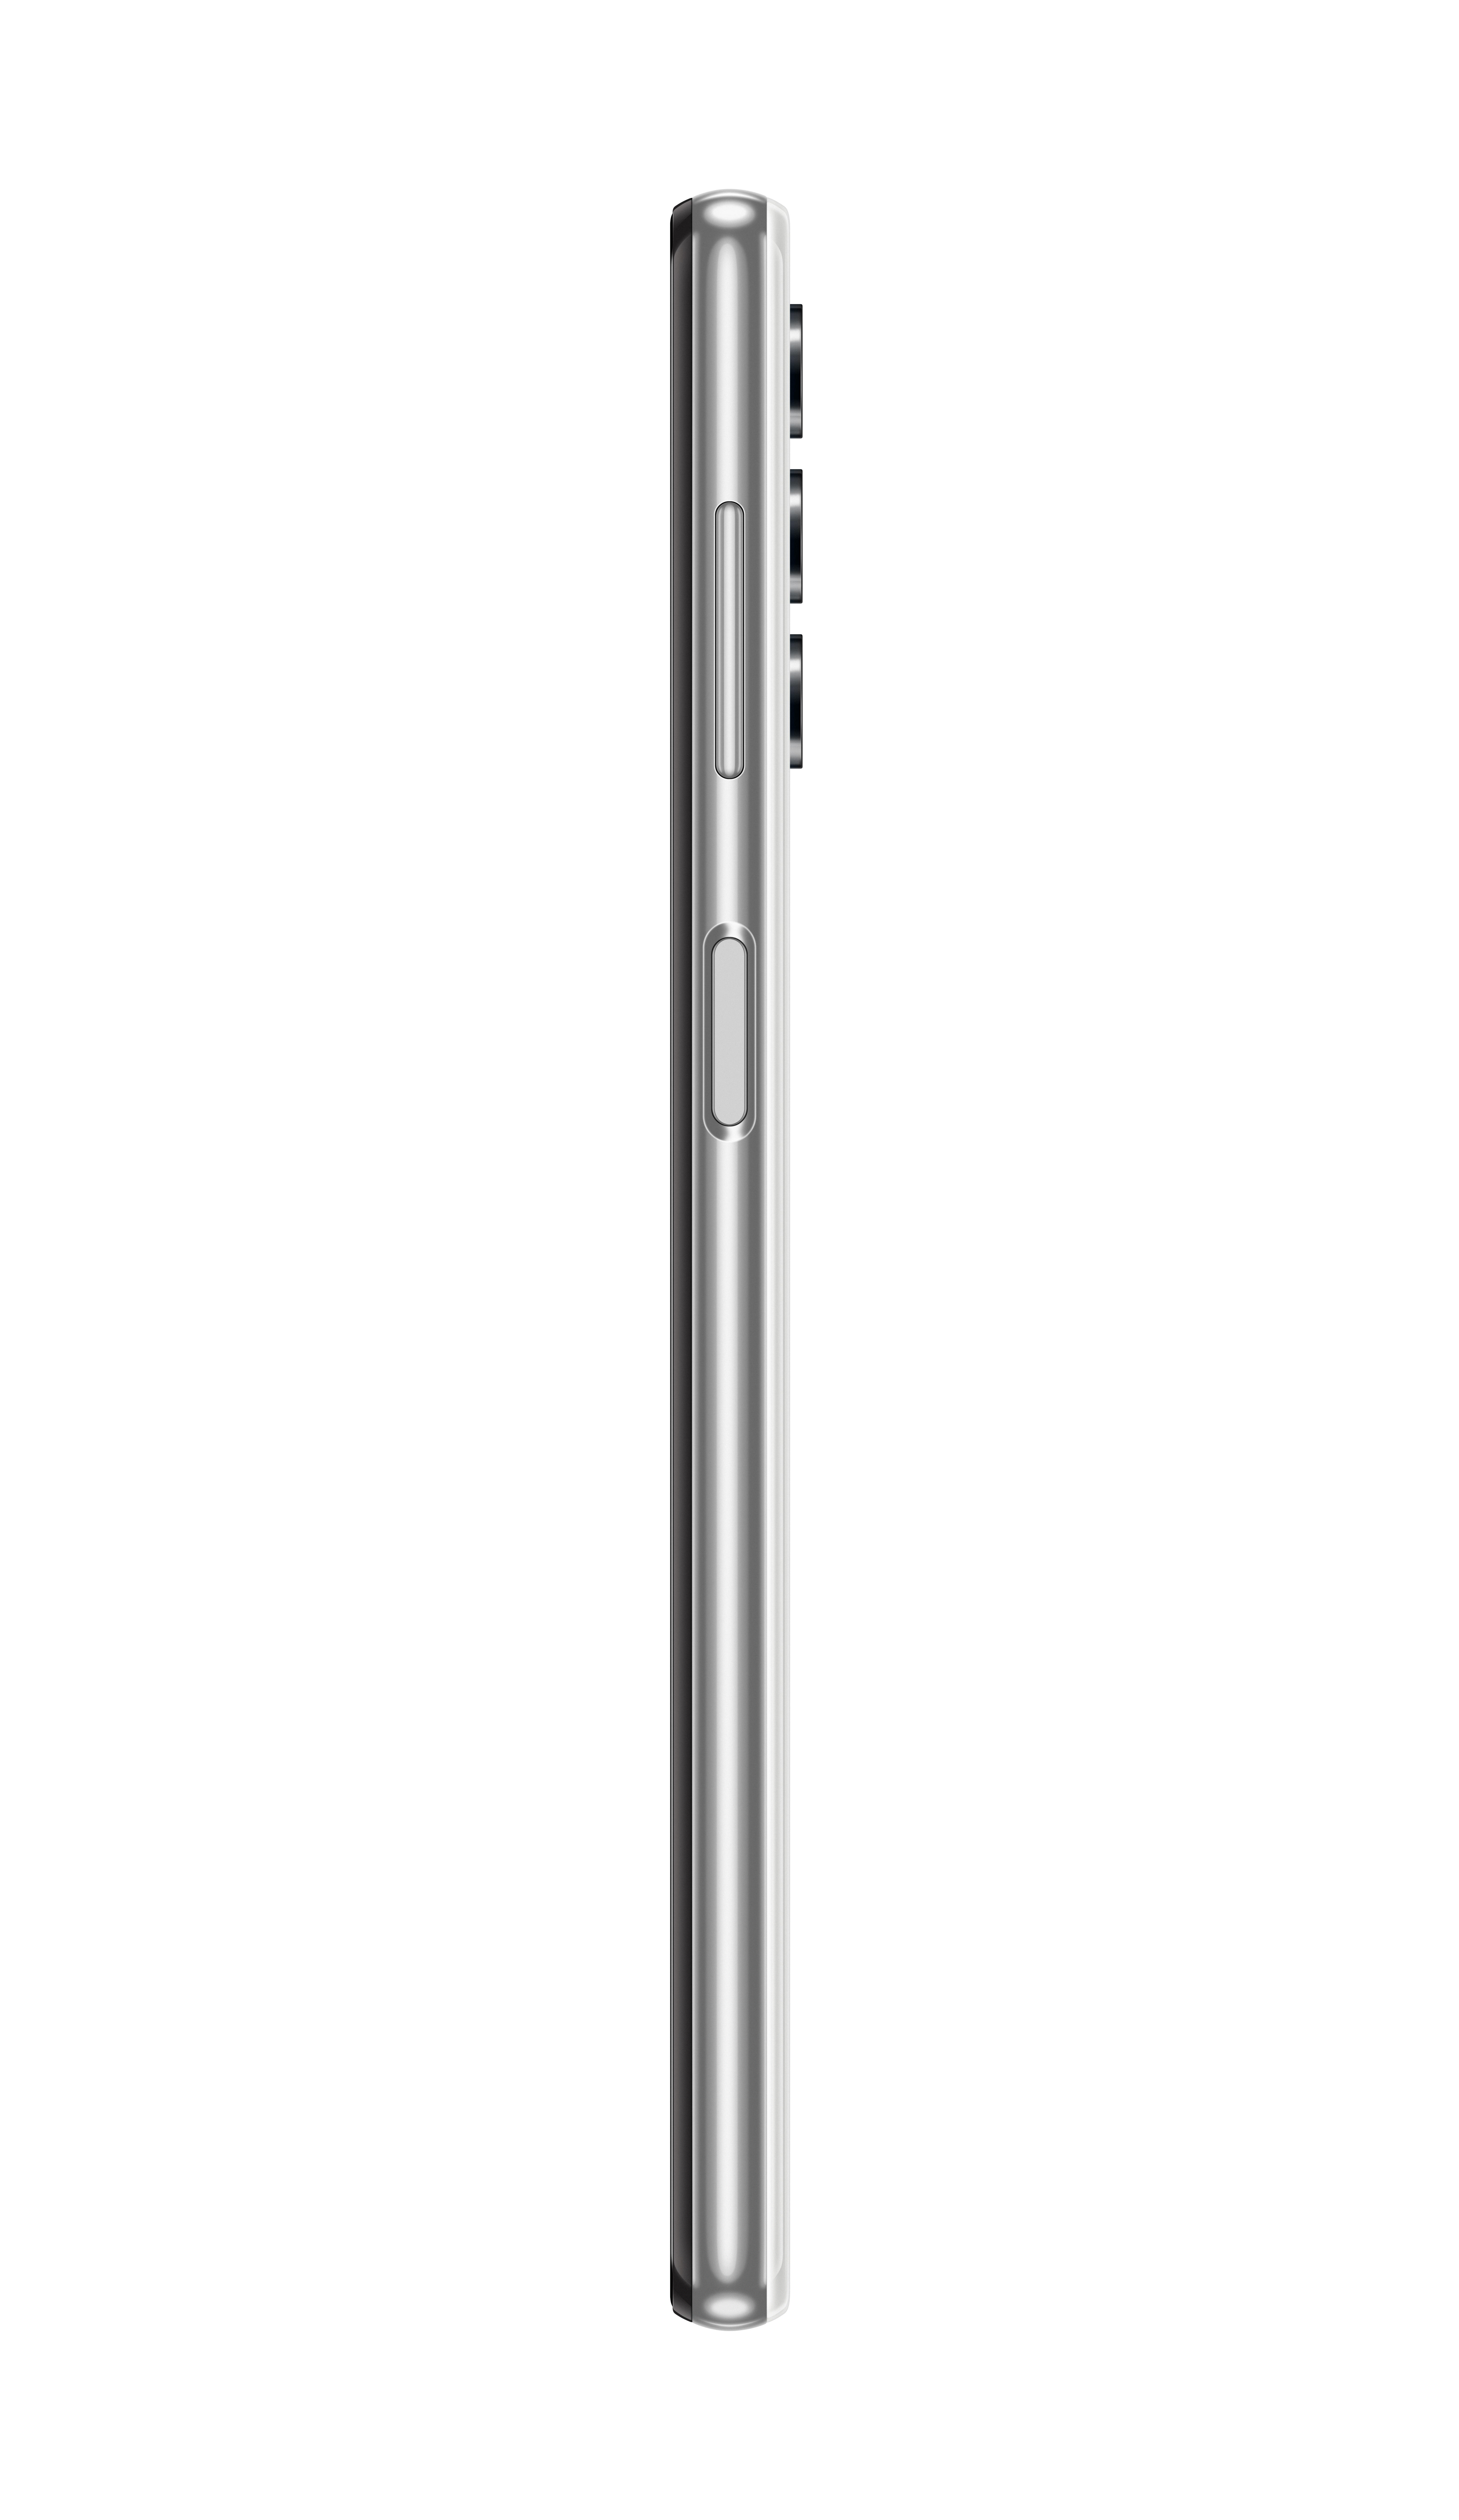 SAMSUNG Galaxy A32 5G 64 Weiss GB Dual SIM